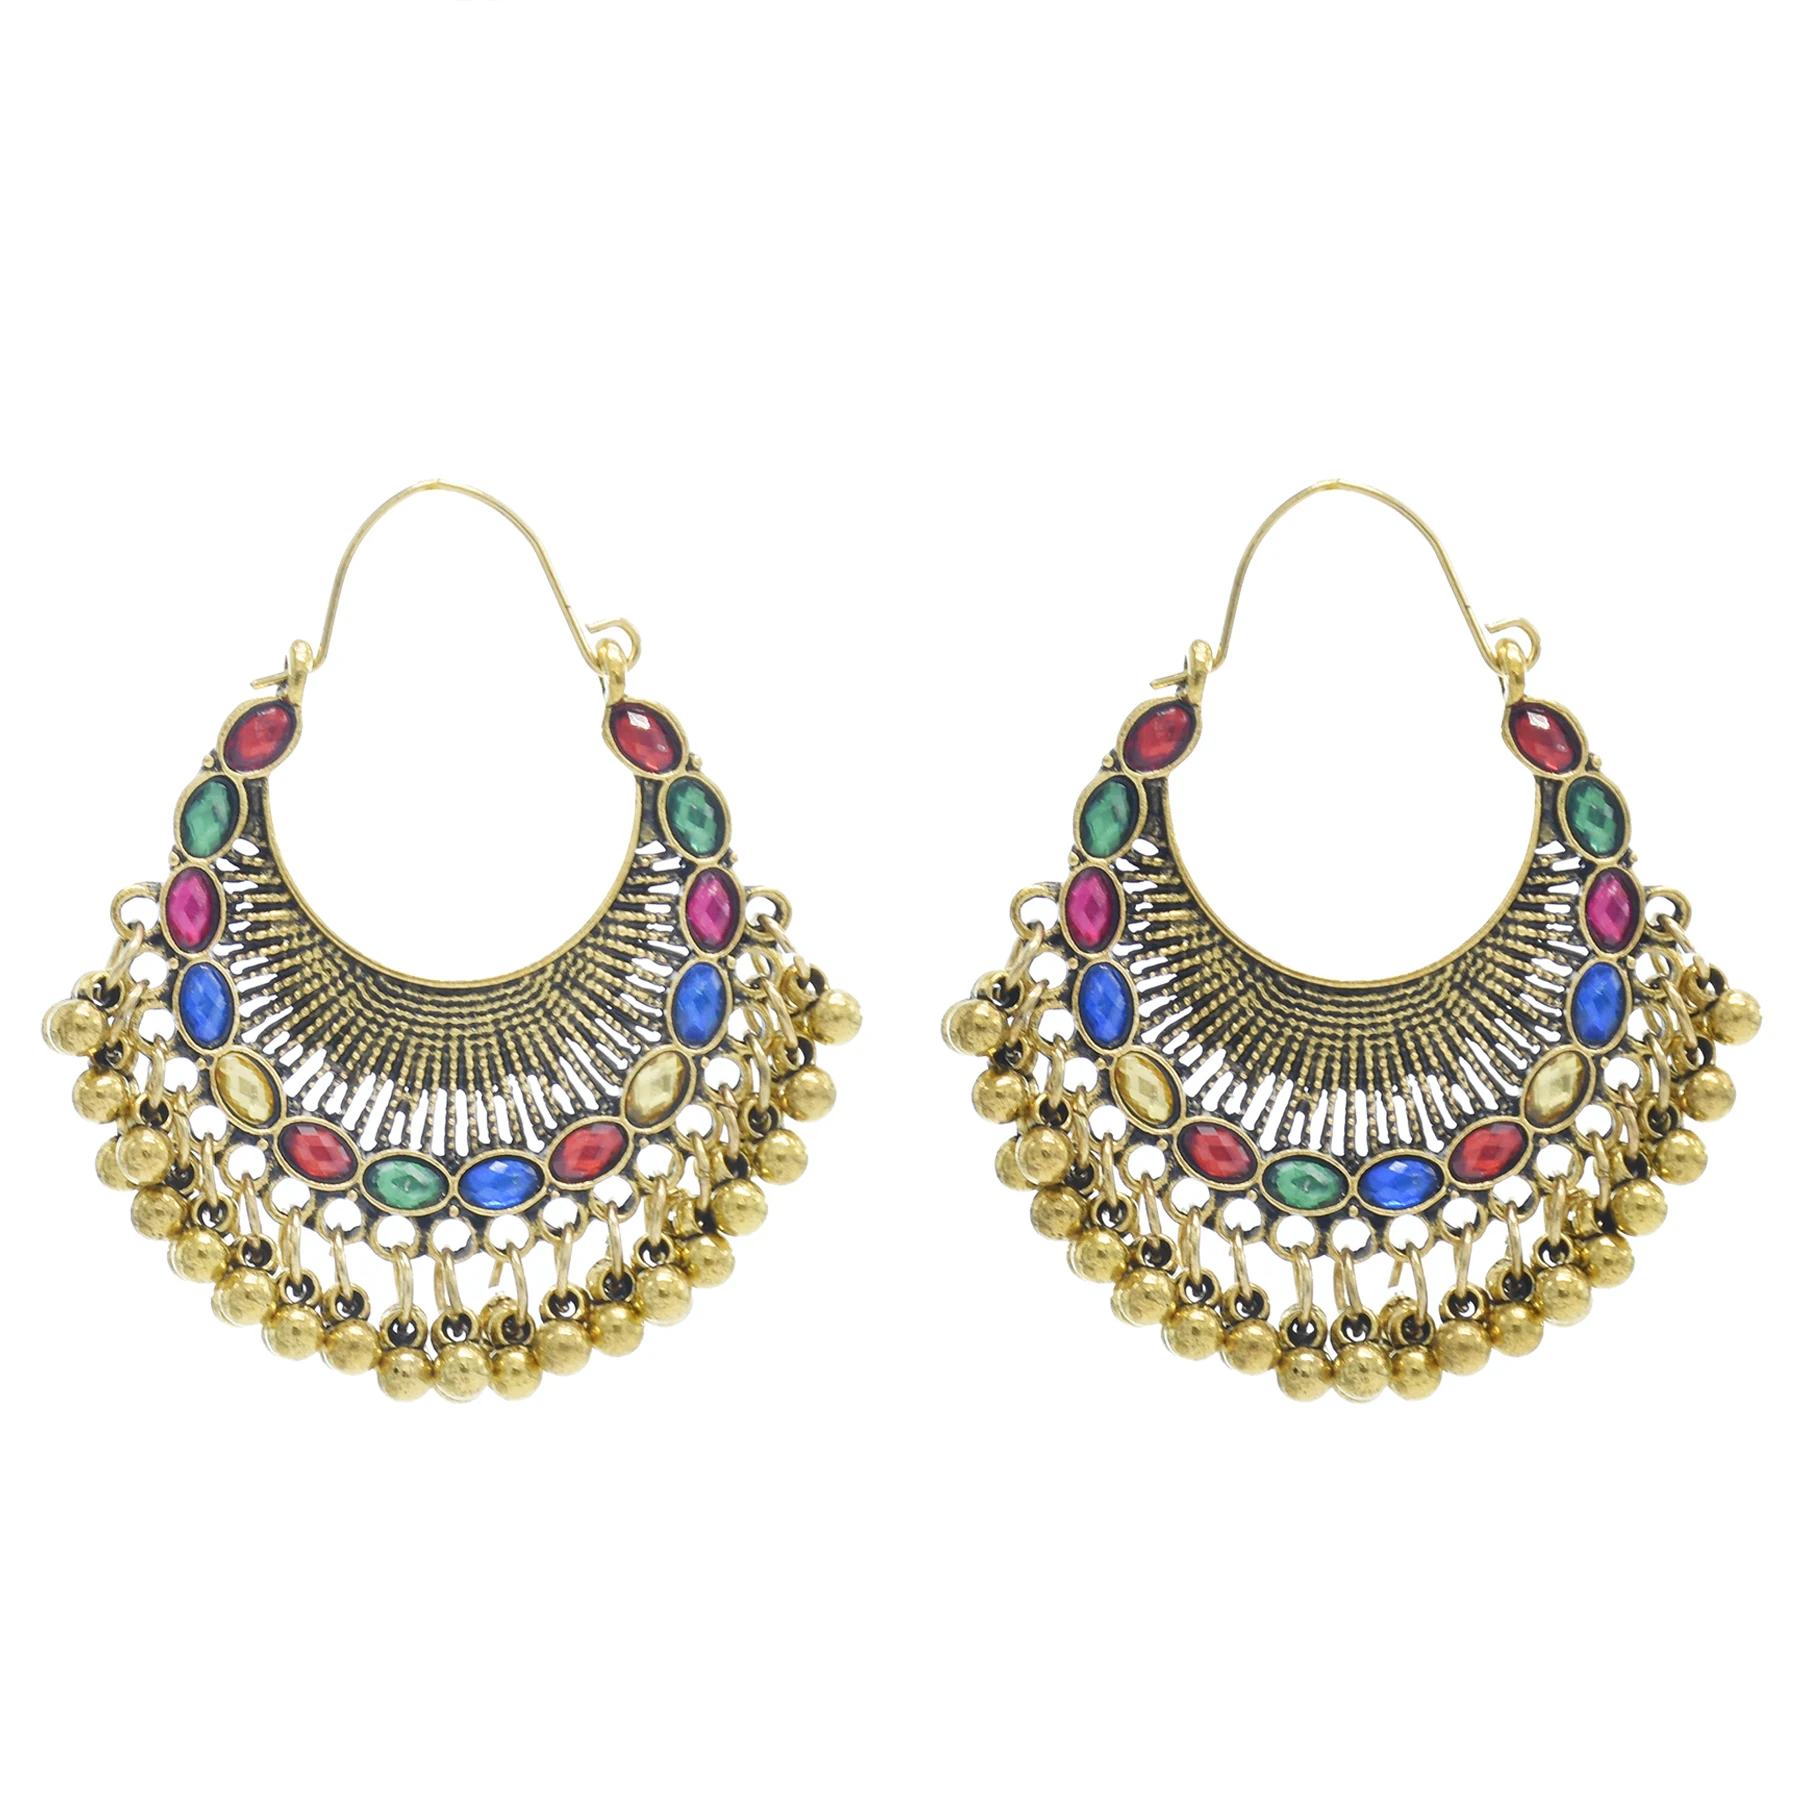 

Indian Gold Alloy Crystal Drop Earrings for Women Boho Hippie Fan Statement Jhumka Earring Piercing Party Tribal Jewelry Gift